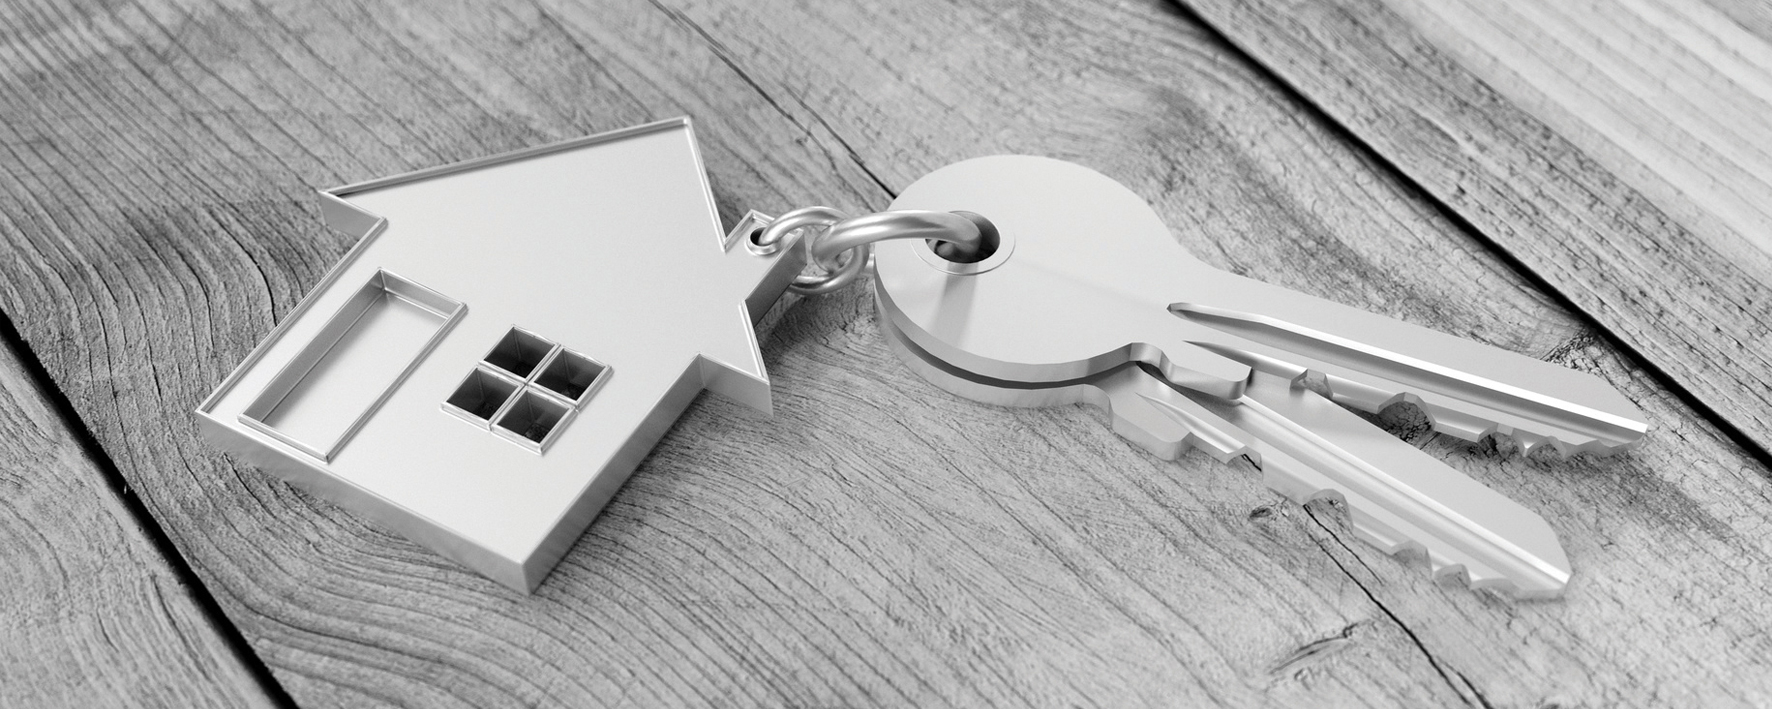 Hauskauf mit Haus und Schlüssel